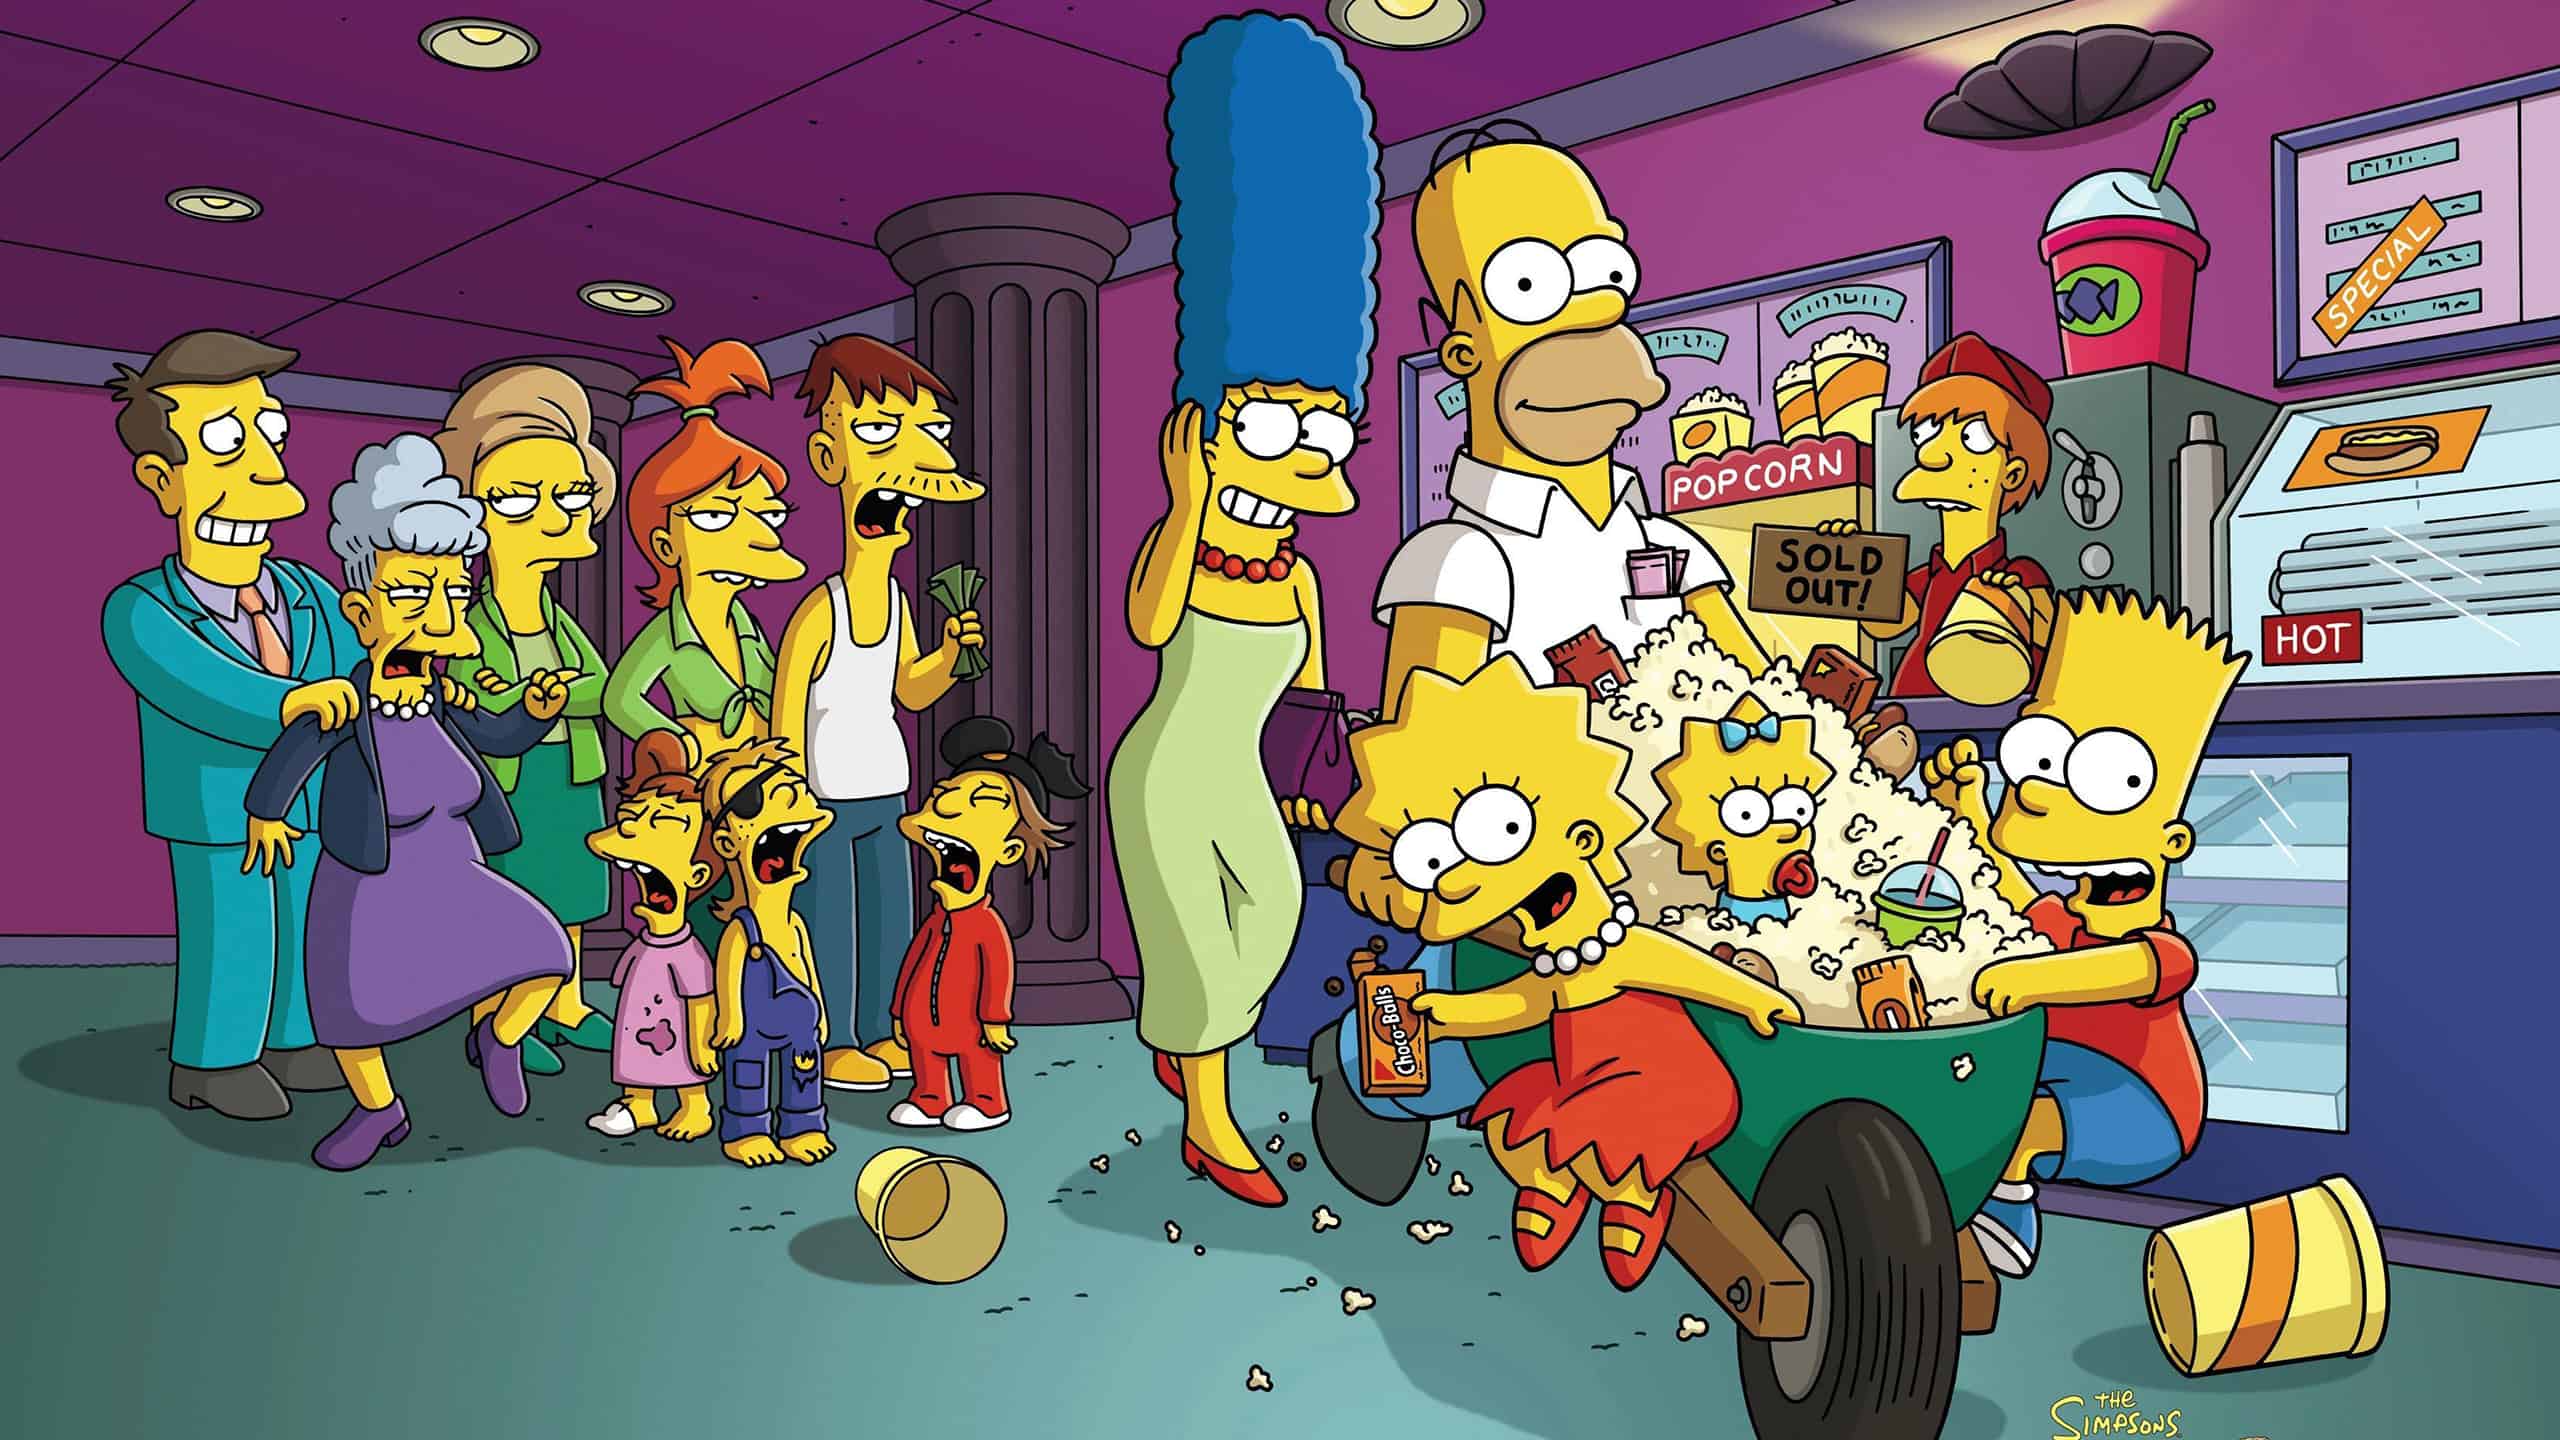 La famille Simpson s'échappe du cinéma avec une brouette remplie de popcorn.